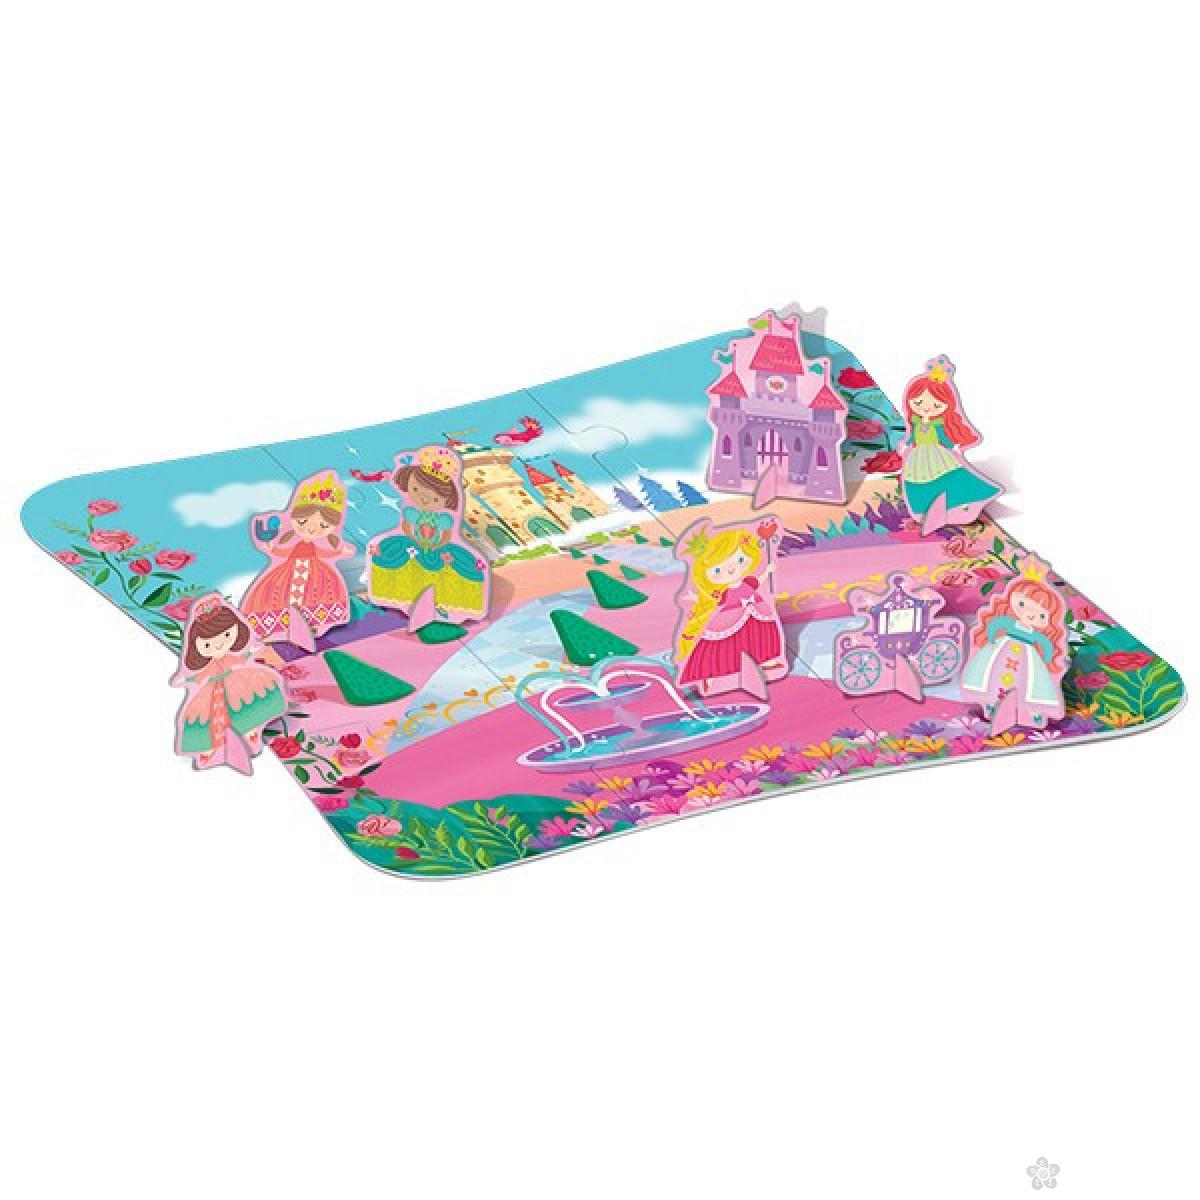 3D puzzle Princess 4M04718 